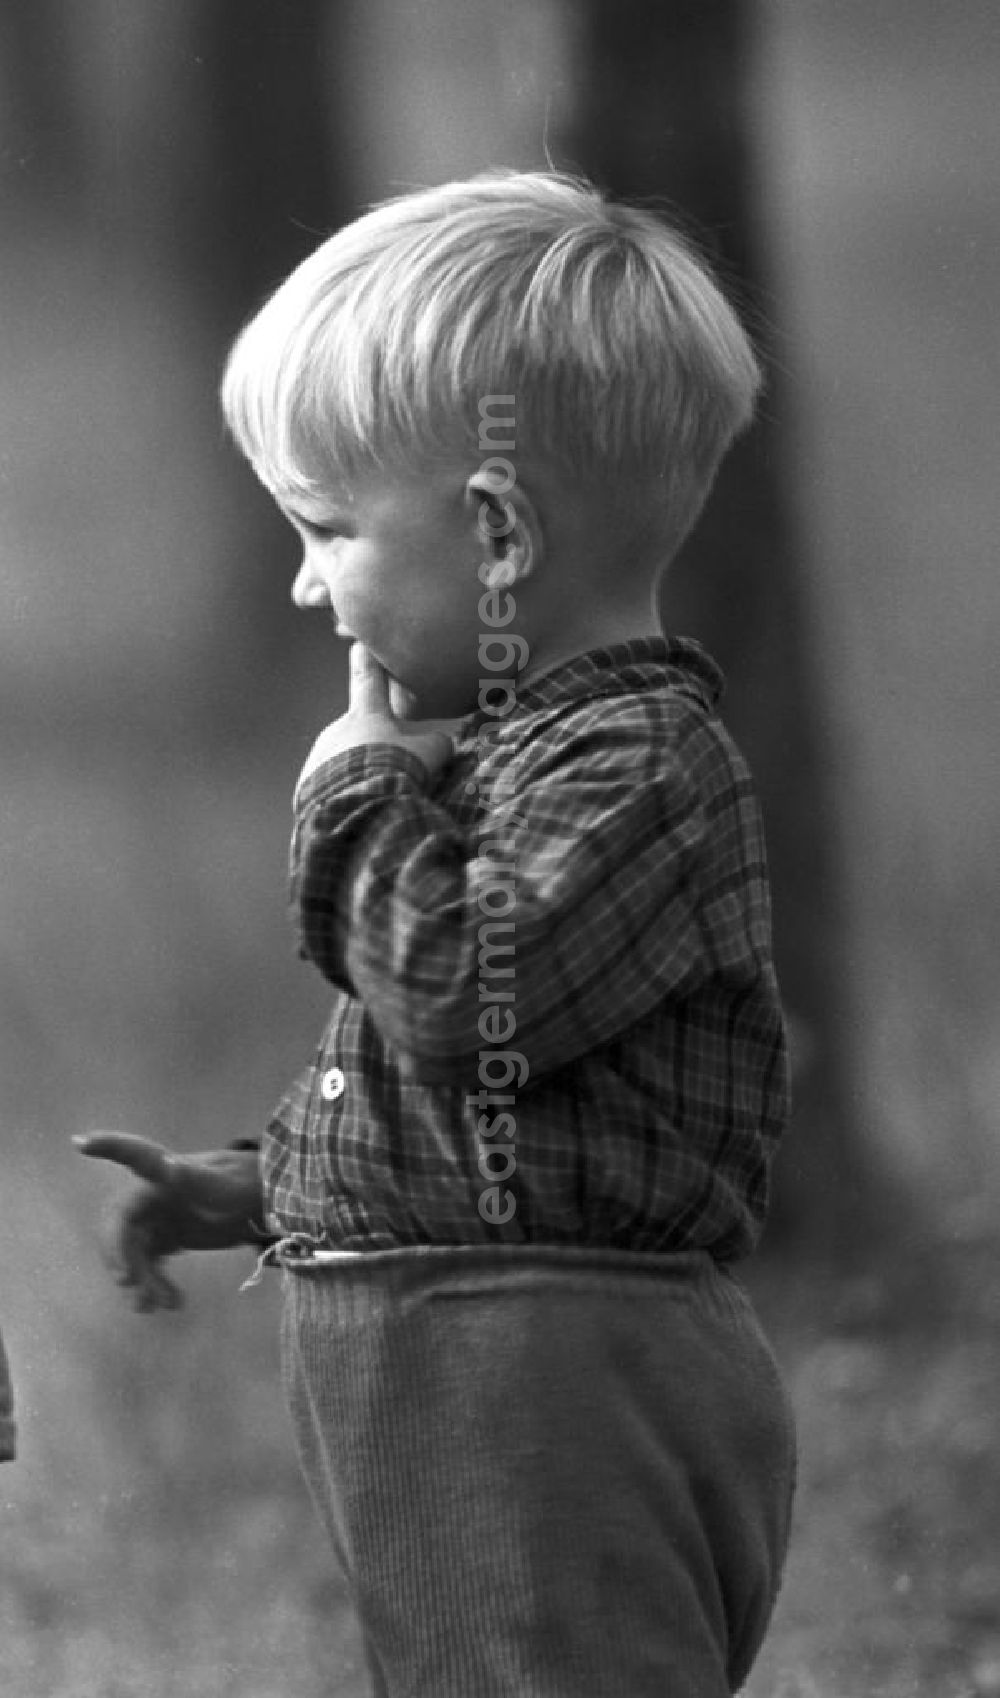 GDR photo archive: Freyburg - Ein kleiner Junge auf einem Feld in der Nähe von Freyburg.